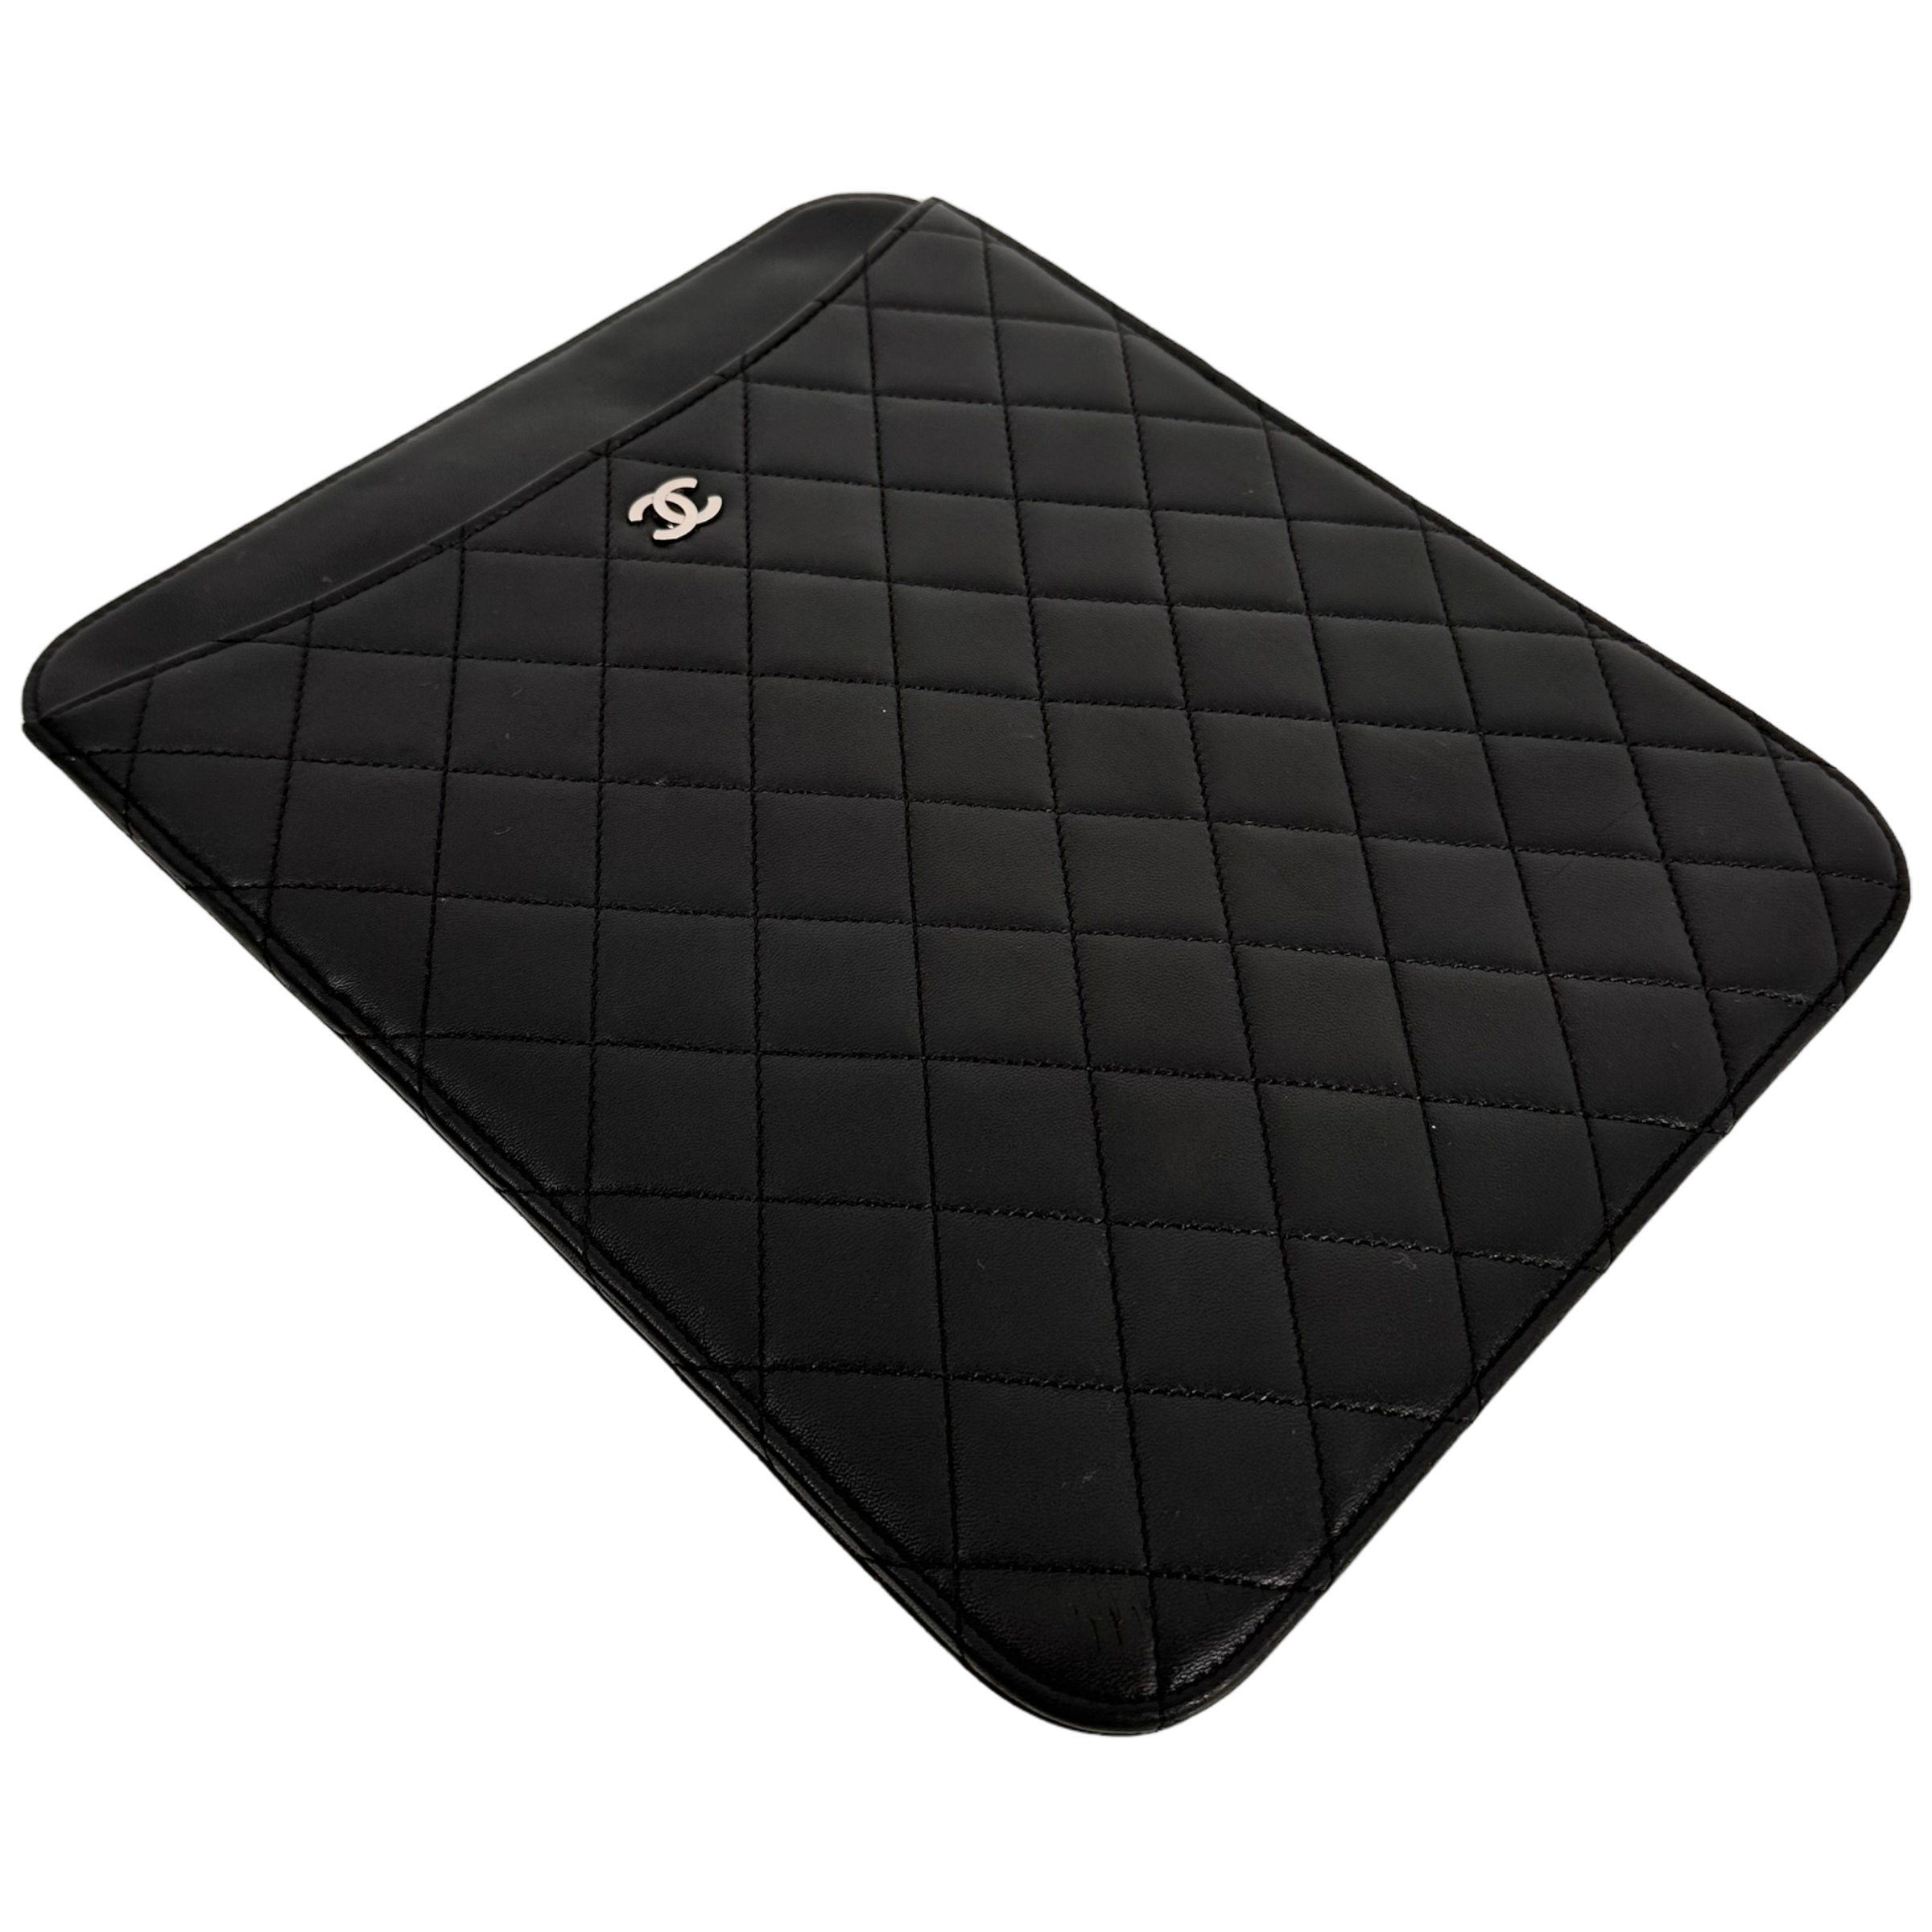 Black Tablet Case